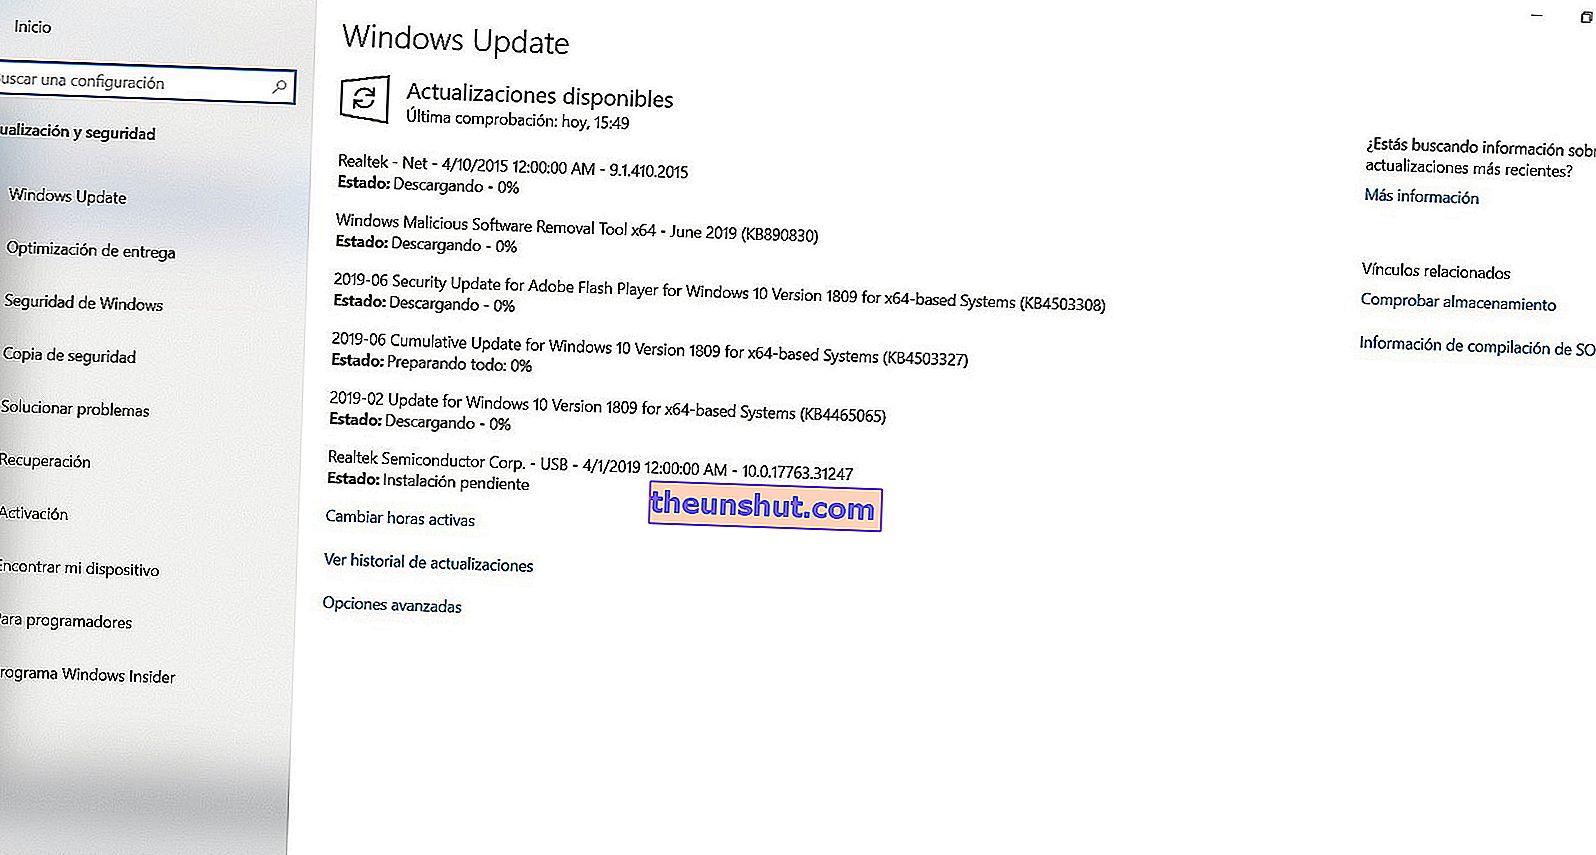 Aggiorna i driver della scheda madre con Windows Update 2